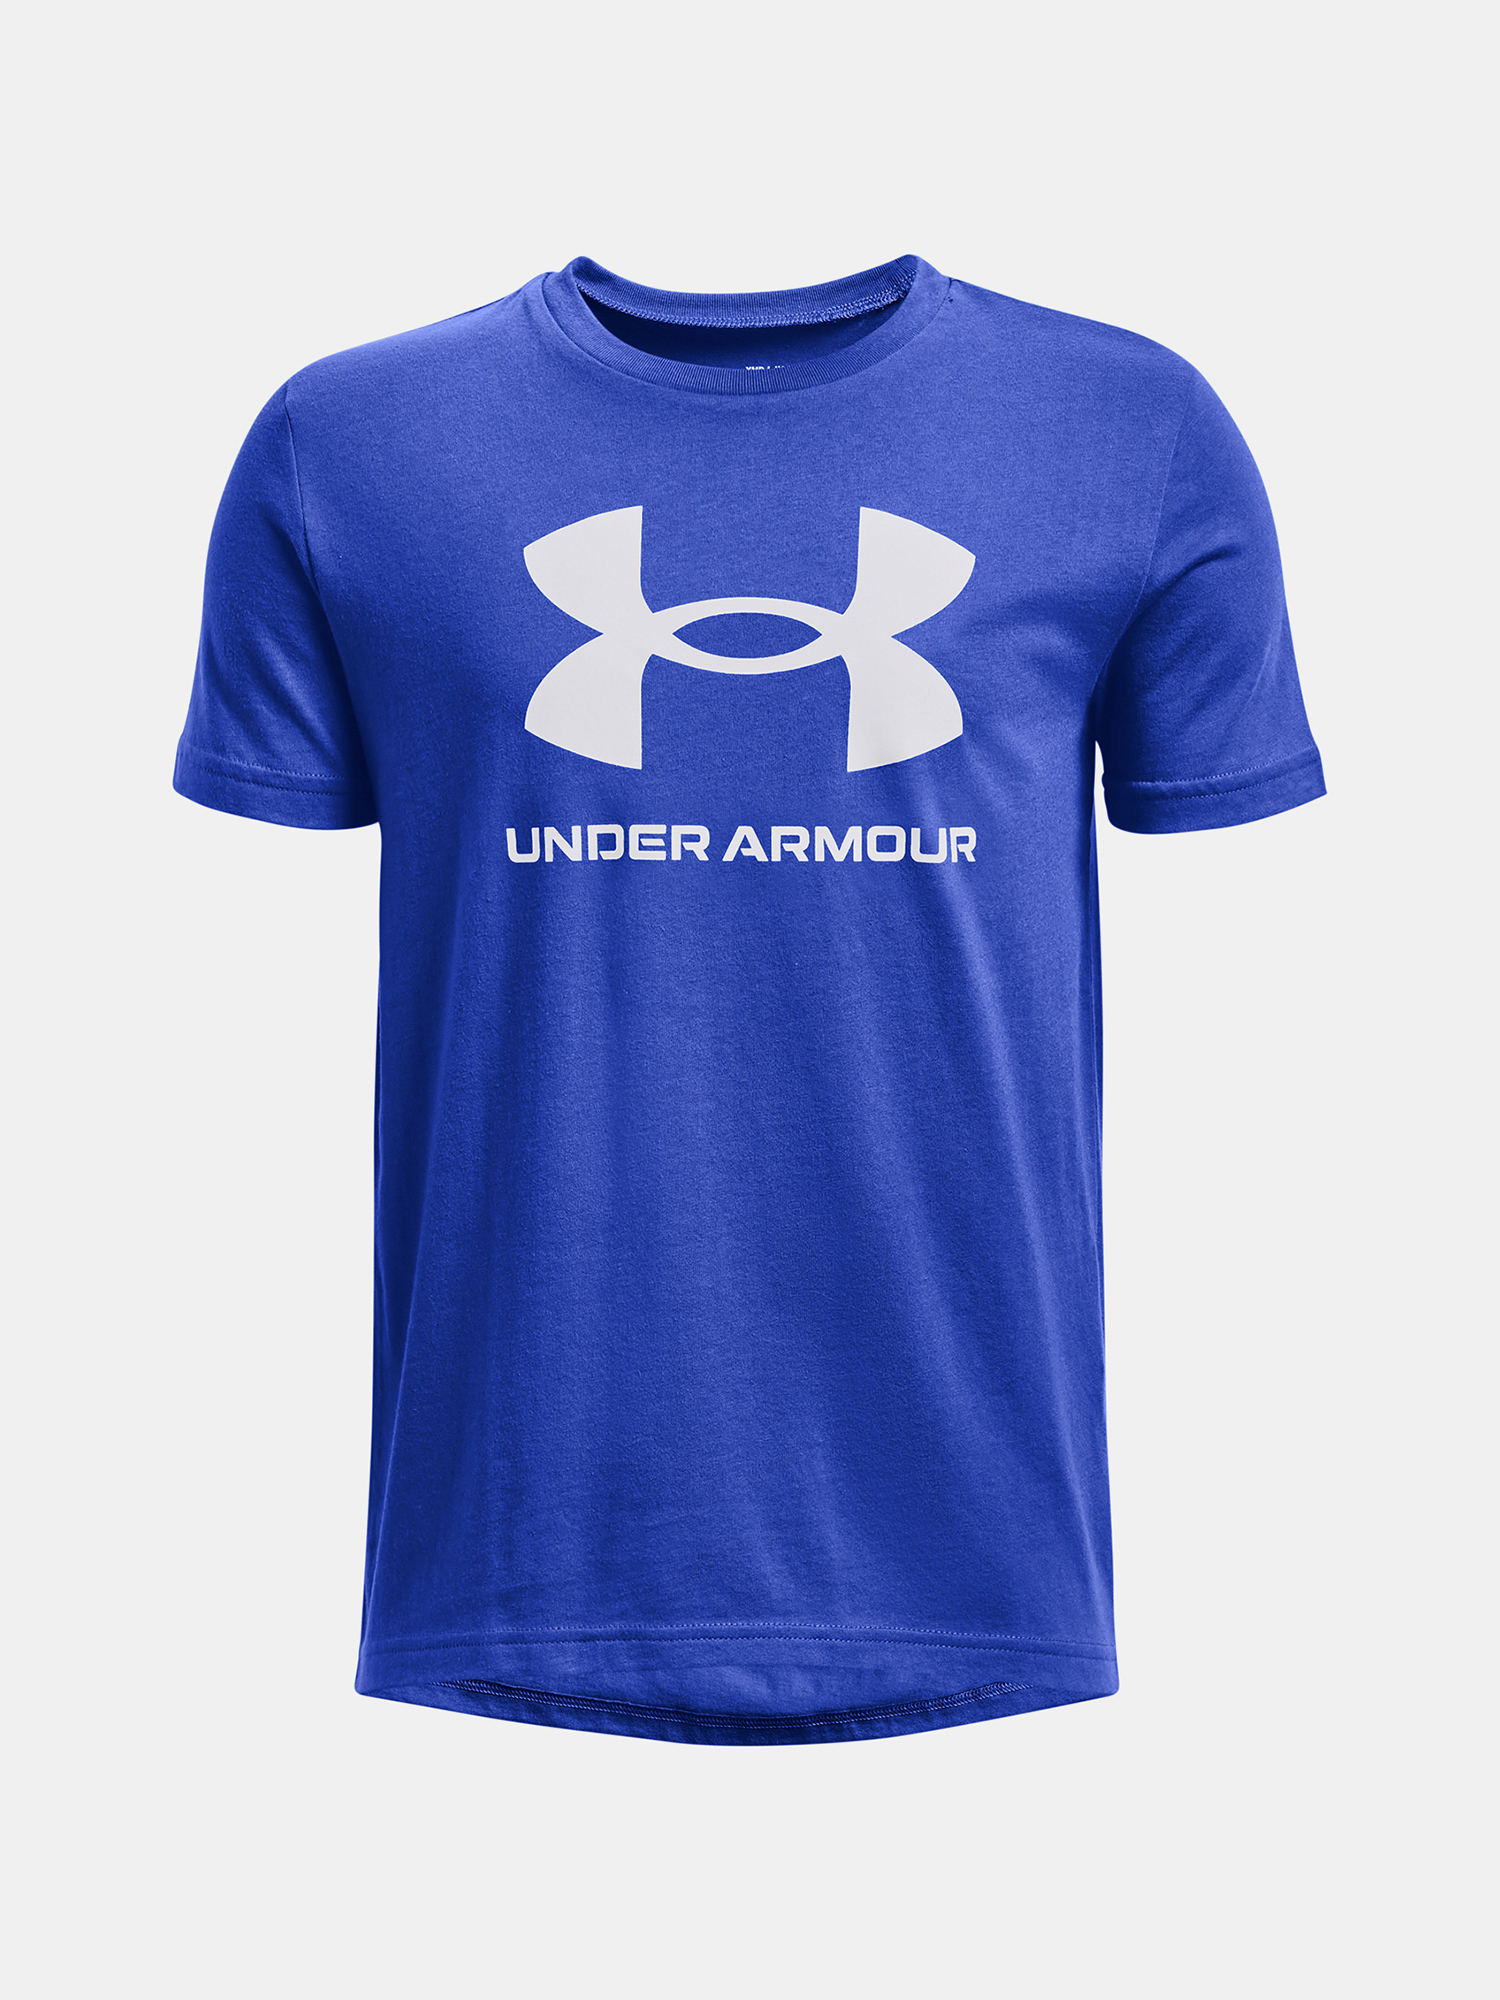 Camiseta De Chicos Under Armour